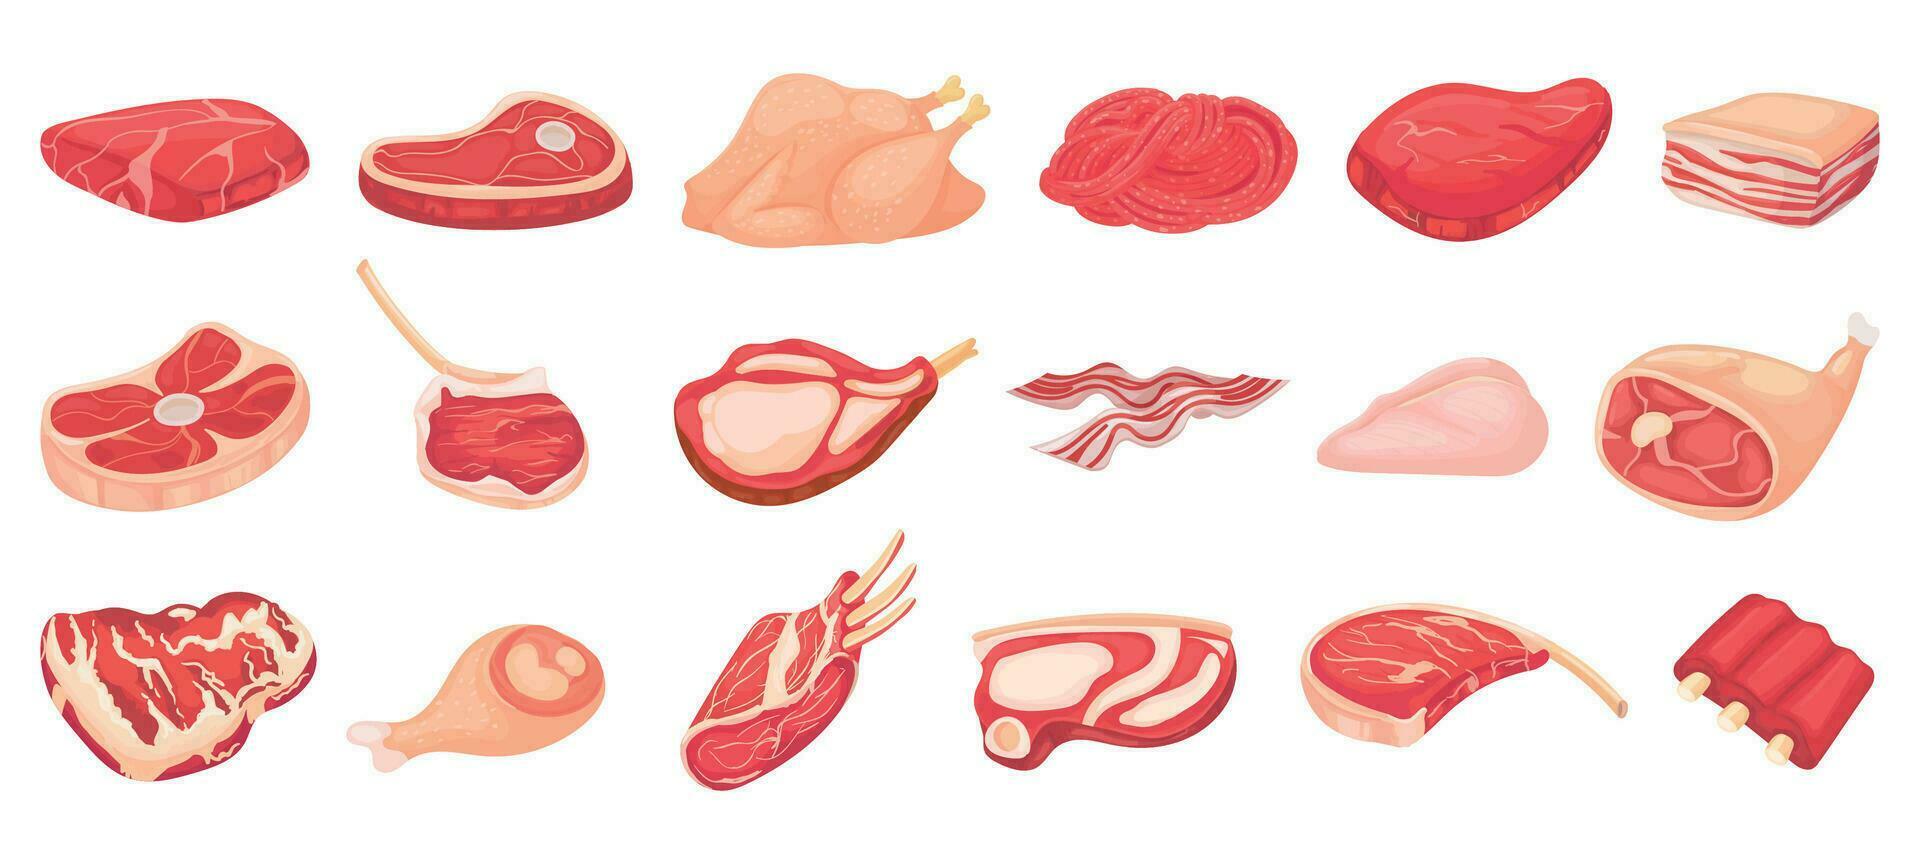 desenho animado cru eu no. bacon, bife e carne picado eu no. prateleira do costelas, frango seio e carne de porco lombo vetor conjunto